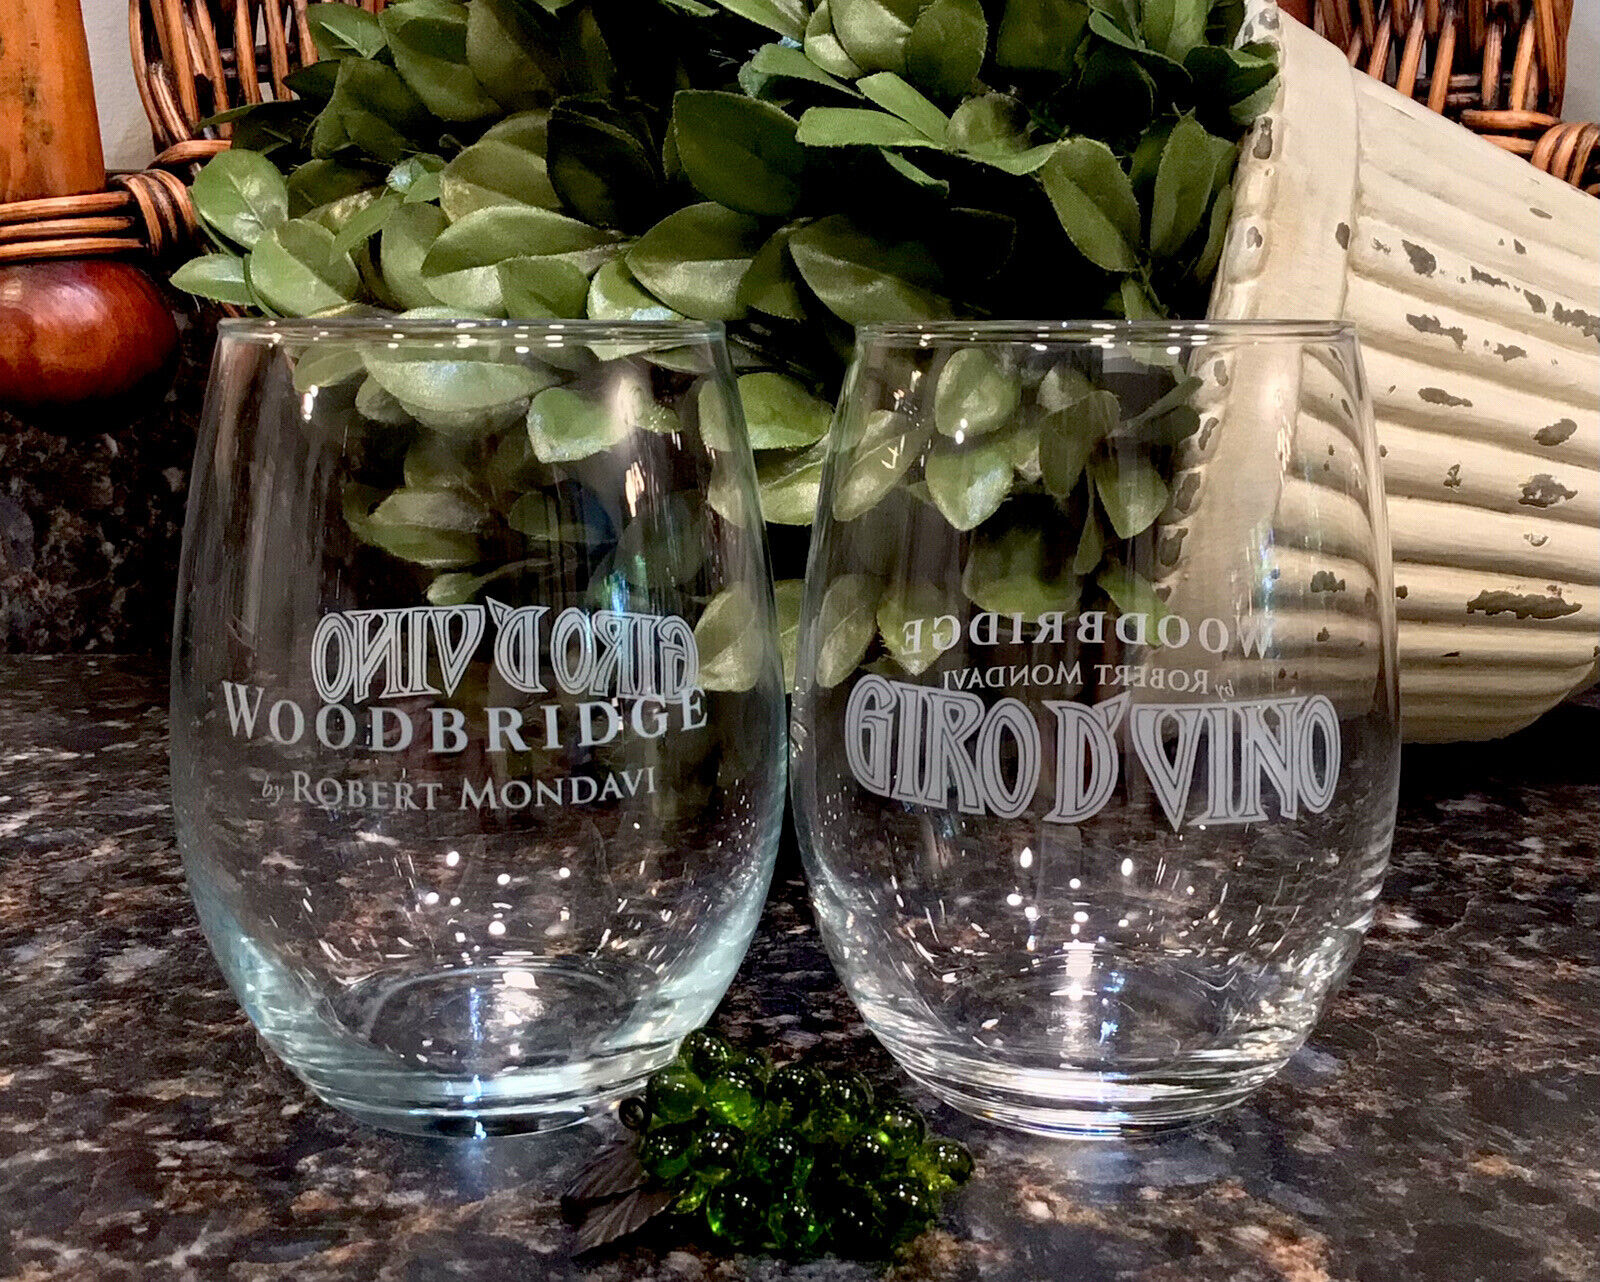 Robert Mondavi Woodbridge GIRO D’ VINO Lodi, CA Bike Tour Wine Glasses (2) MINT